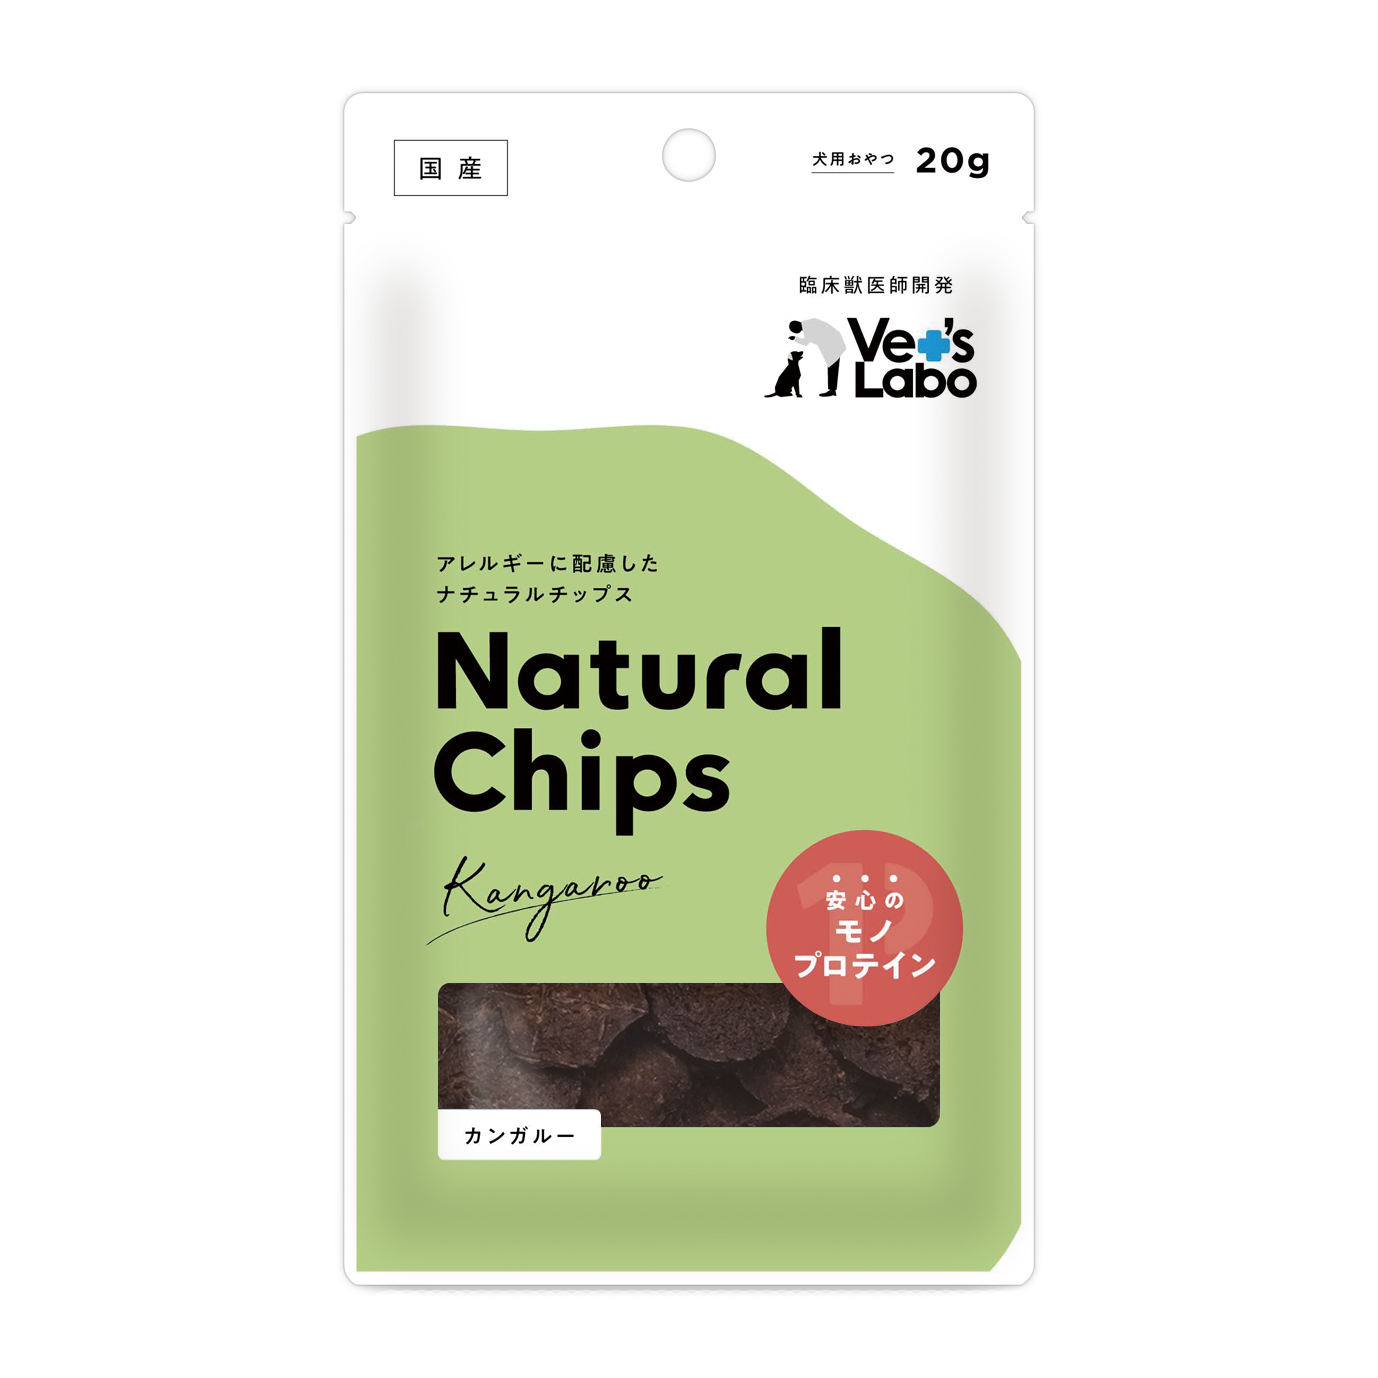 Natural Chips カンガルー